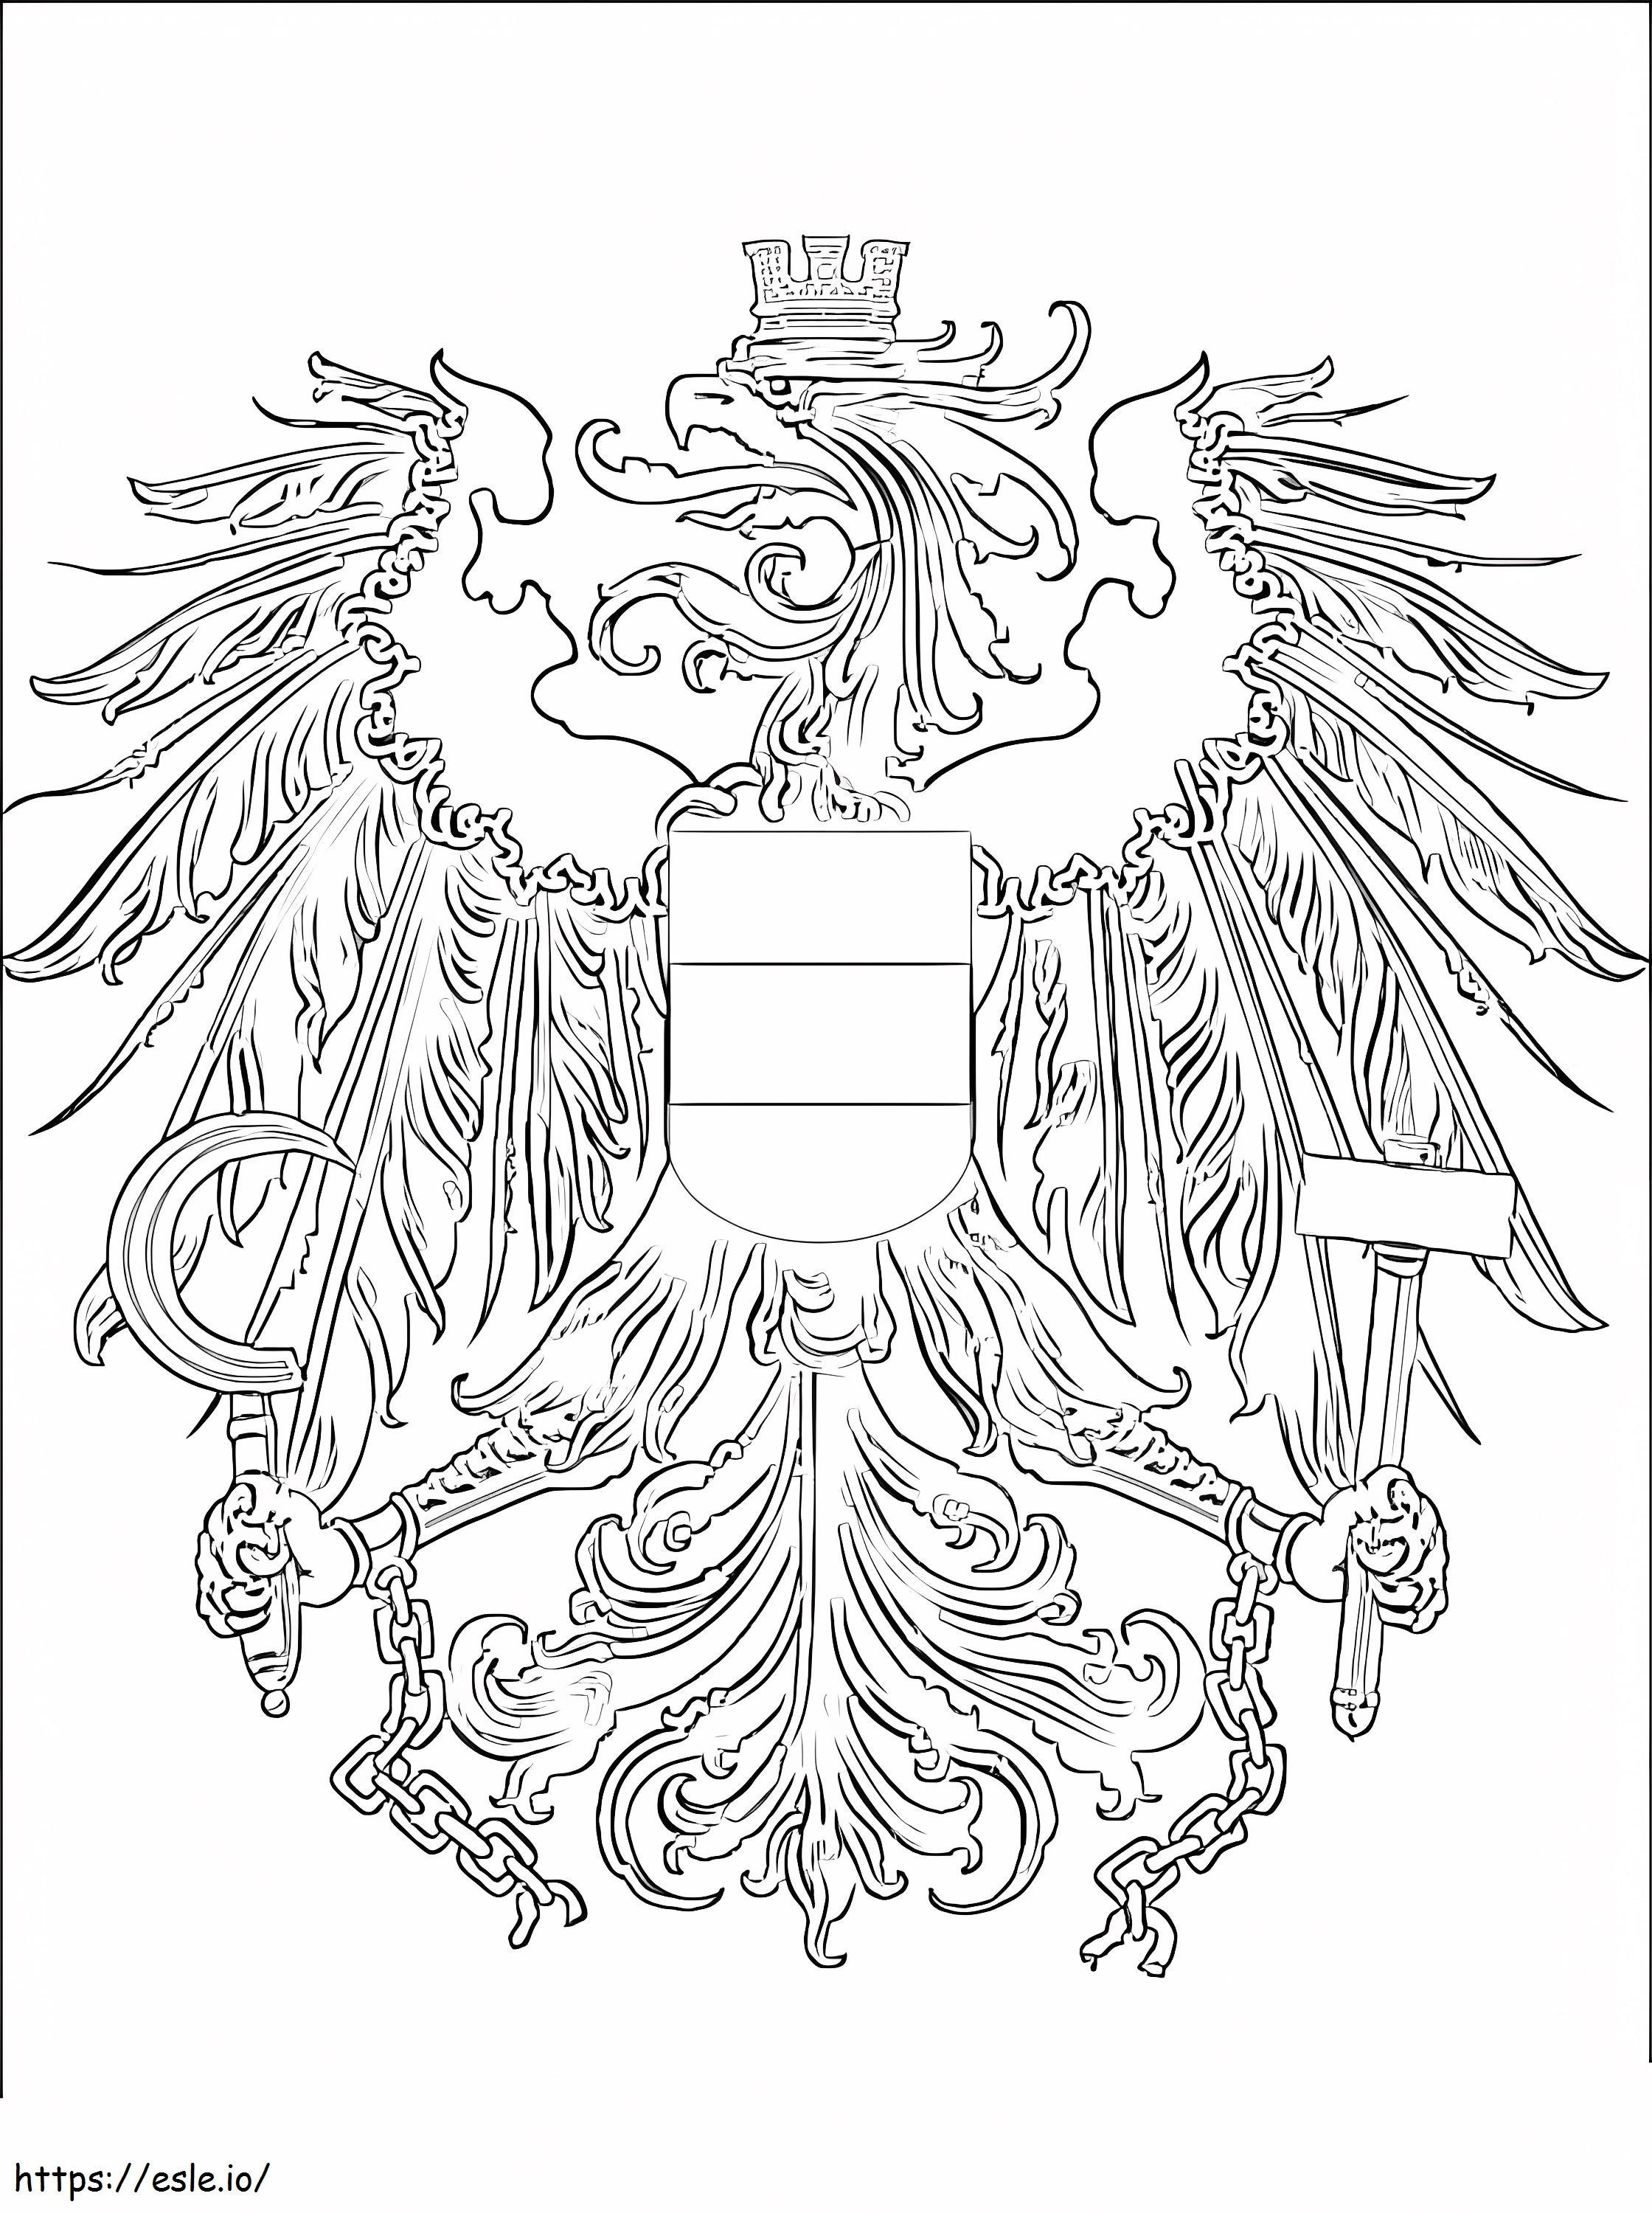 Österreichisches Wappen ausmalbilder